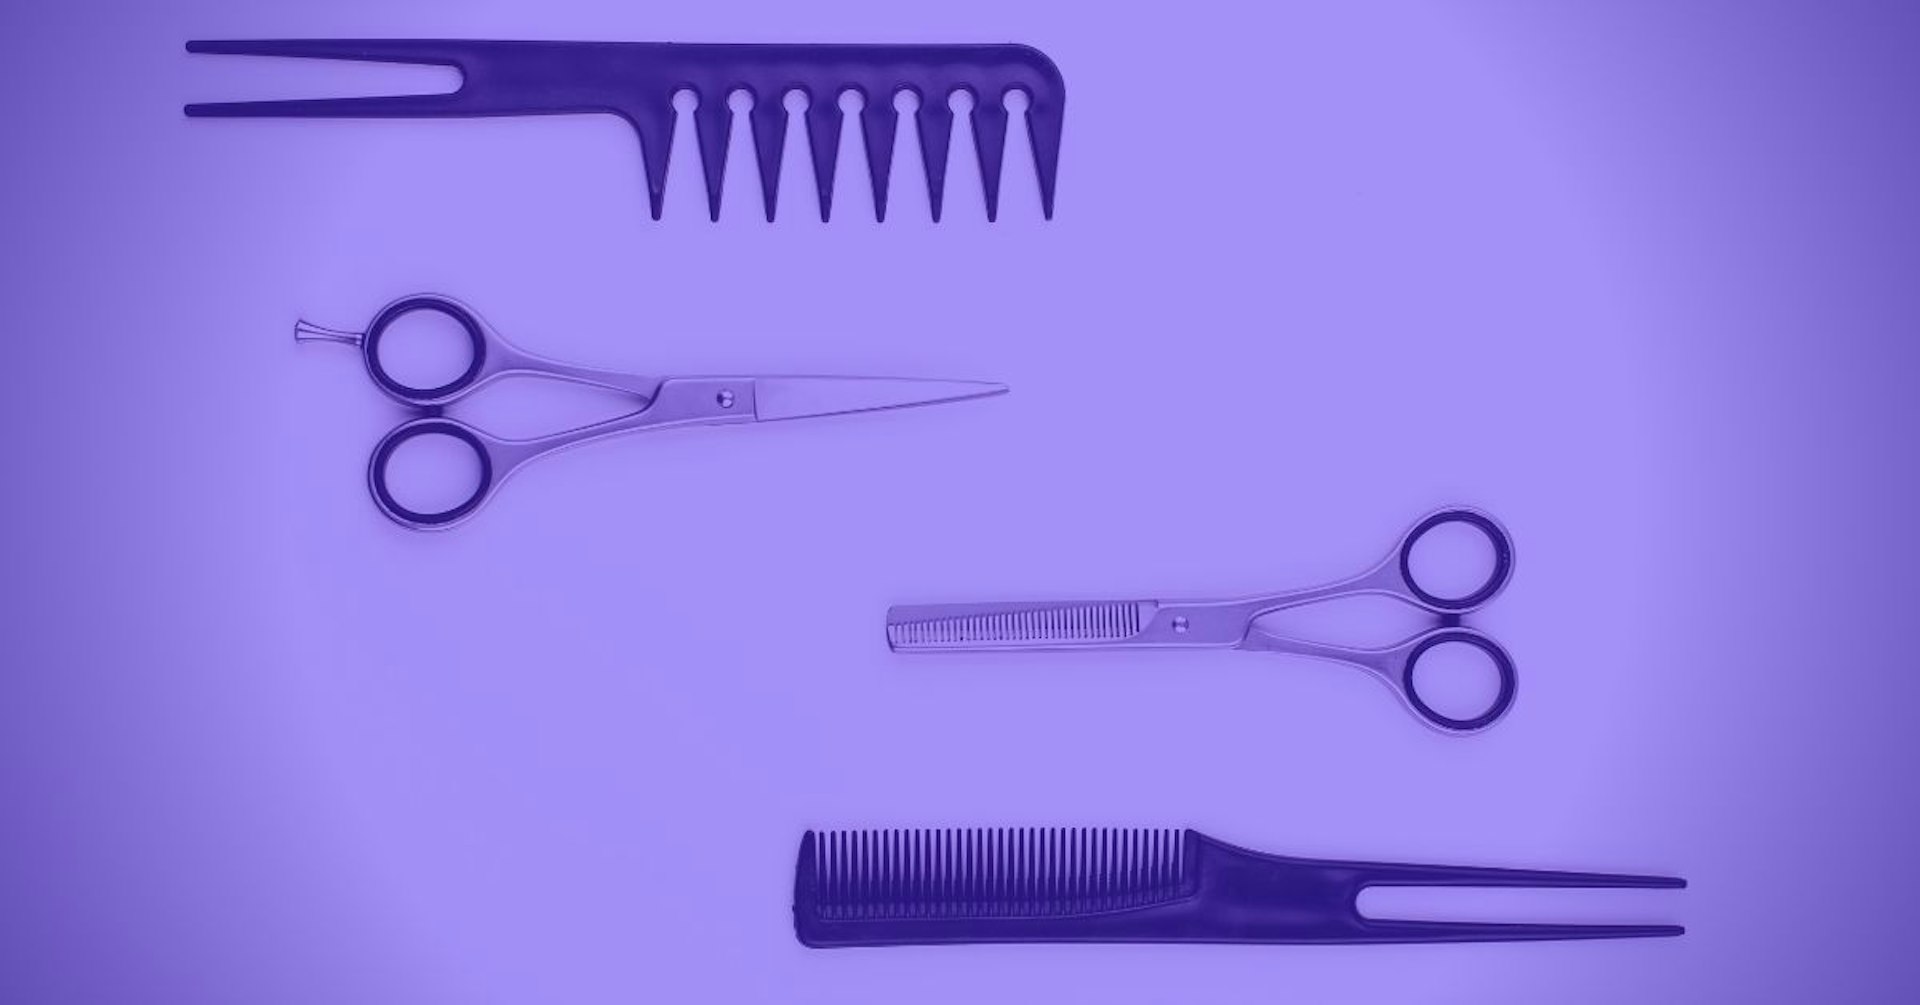 ¿Cómo cortar cabello de hombre? Conoce los pasos que te salvarán de una emergencia